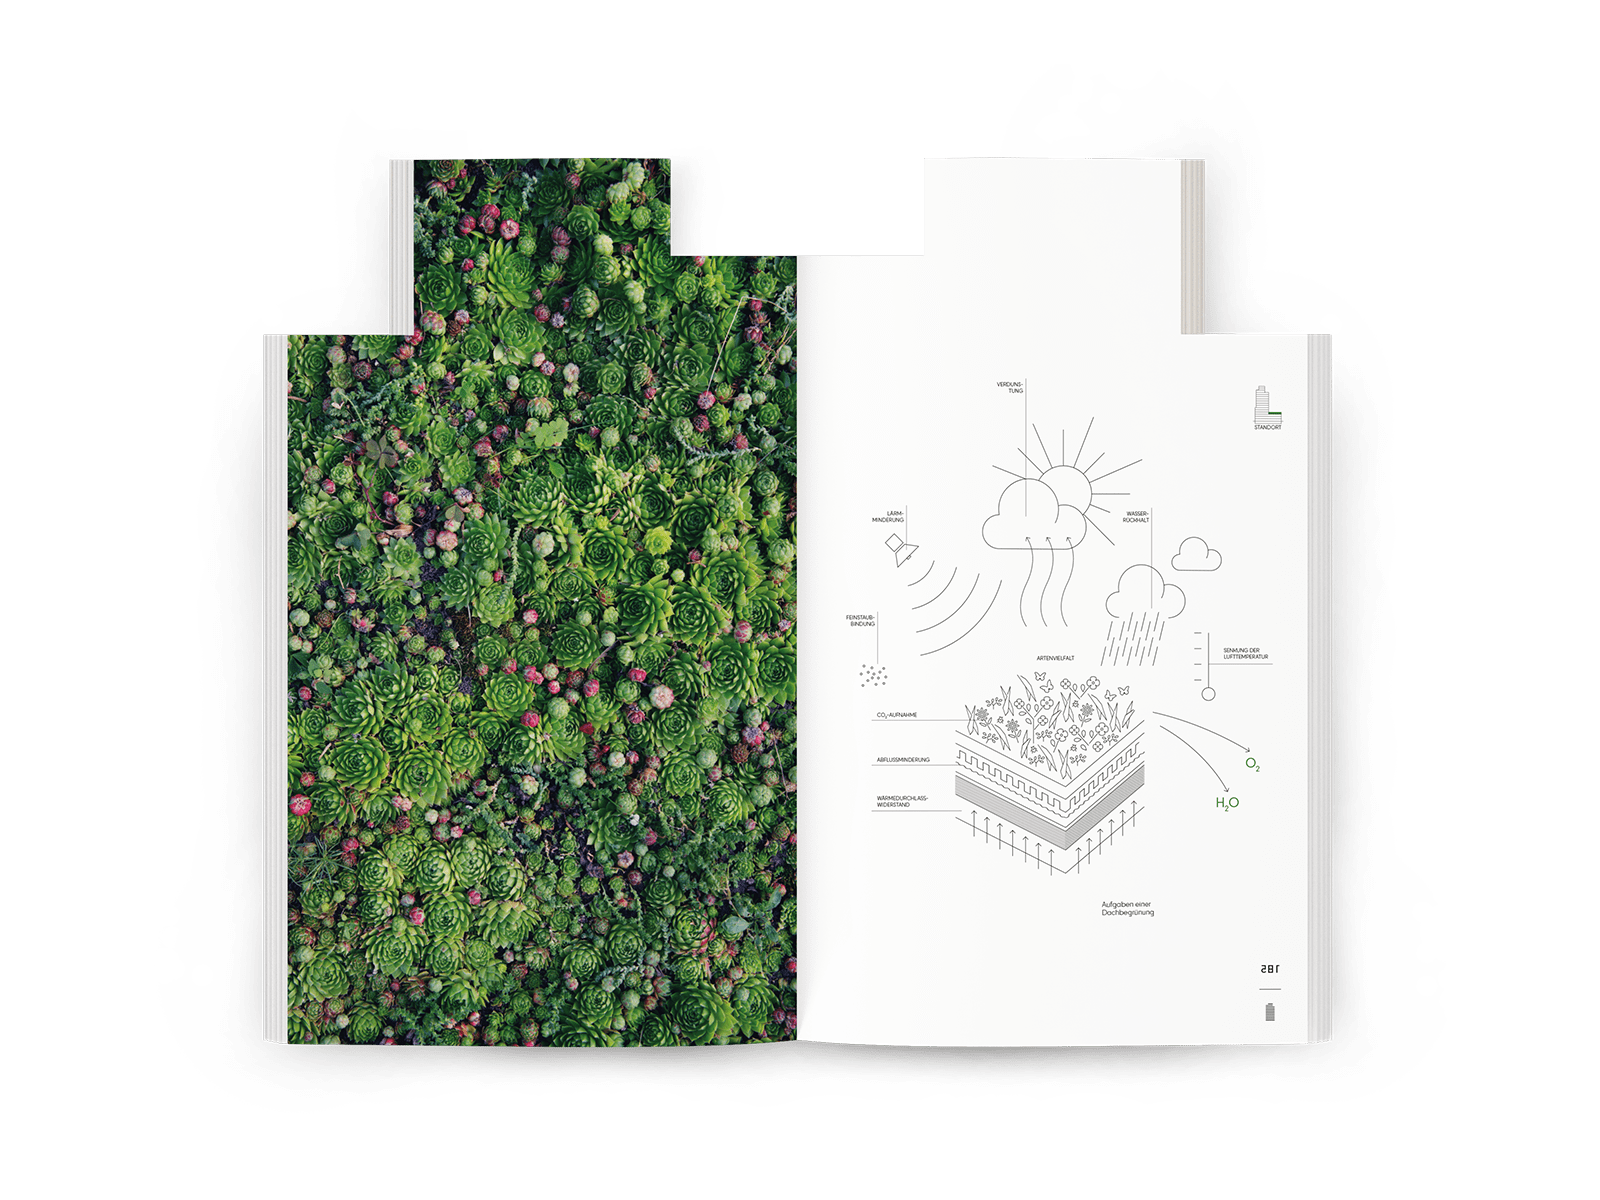 Eine Innenseite der Dokumentation. Links ein Bild mit bunten und grünen Pflanzen, rechst eine Illustration.